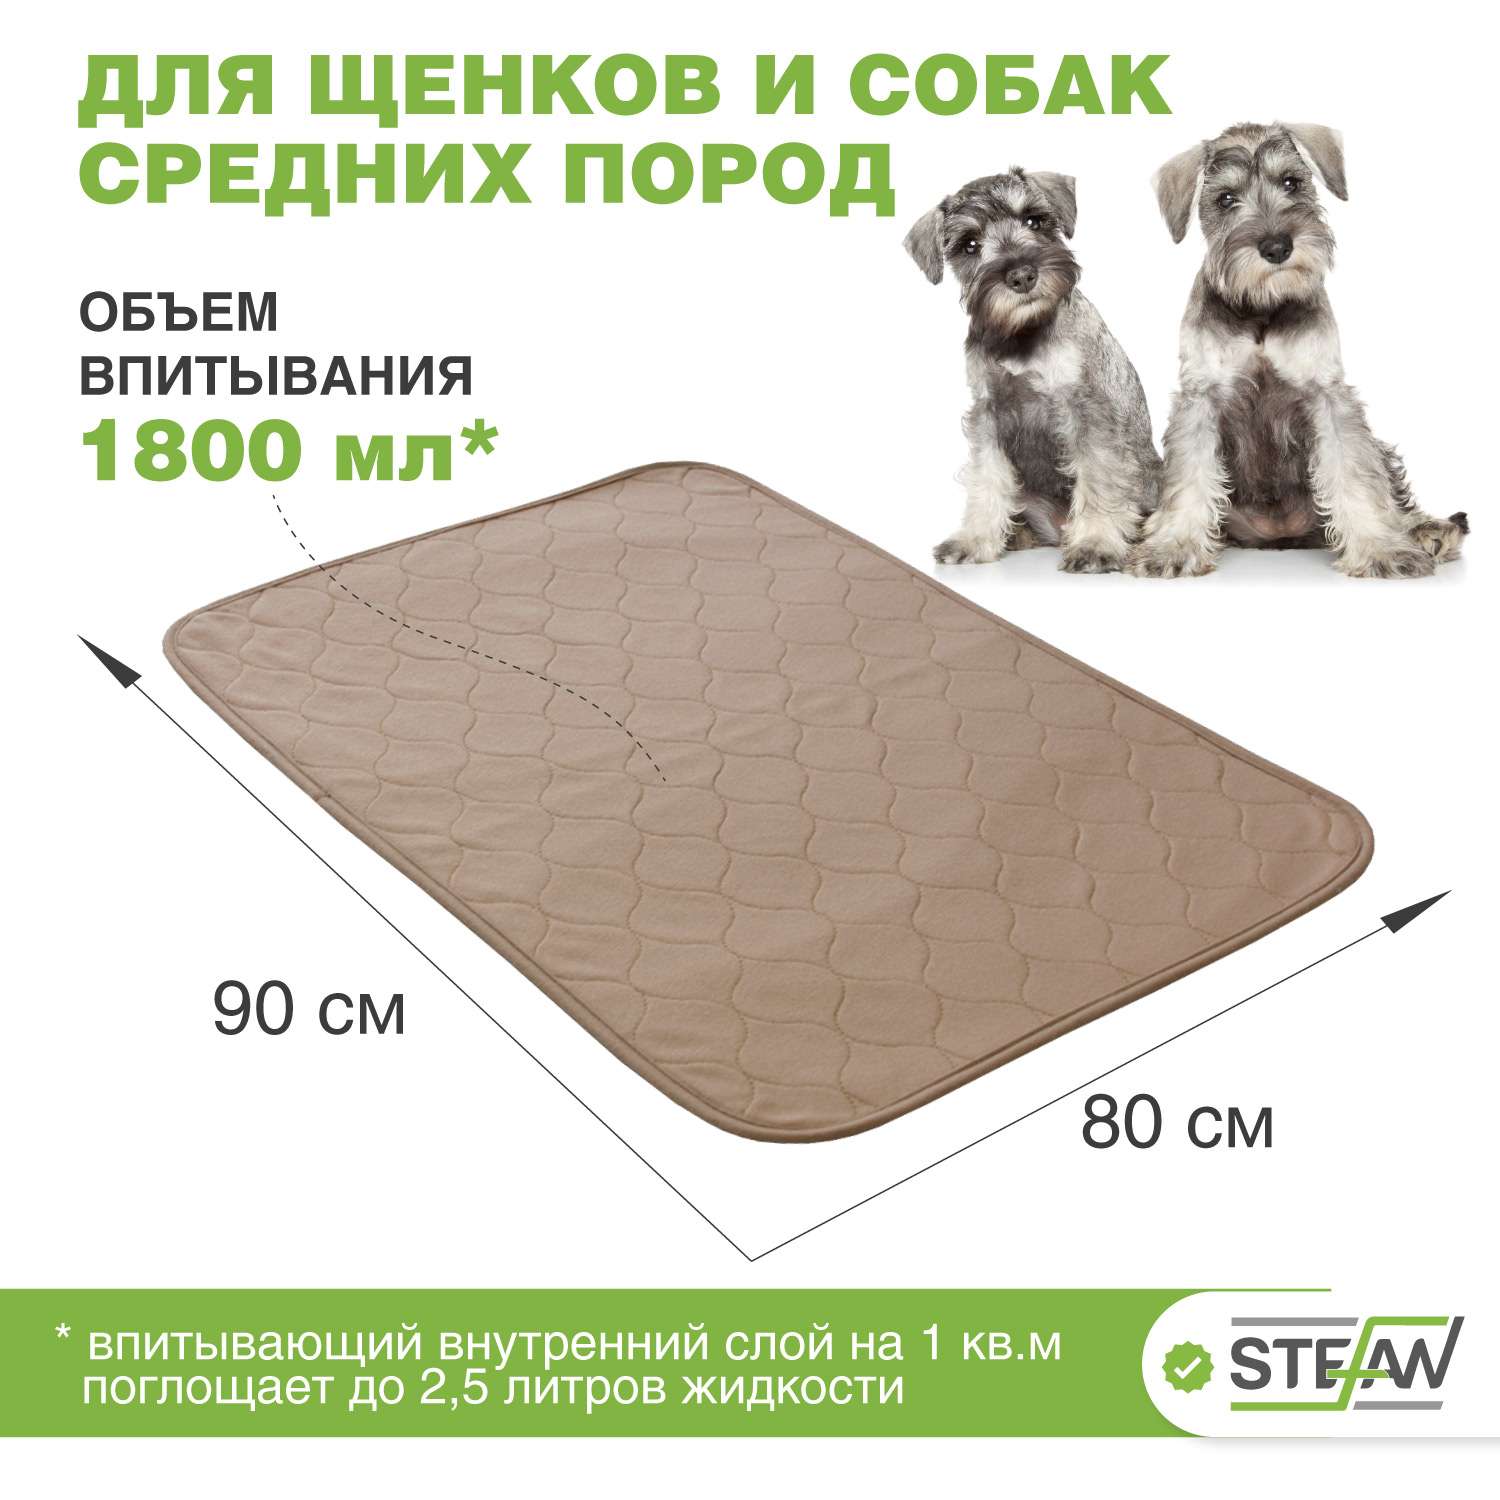 Пеленка для животных Stefan впитывающая многоразовая коричневая однотонная 80х90 см - фото 2